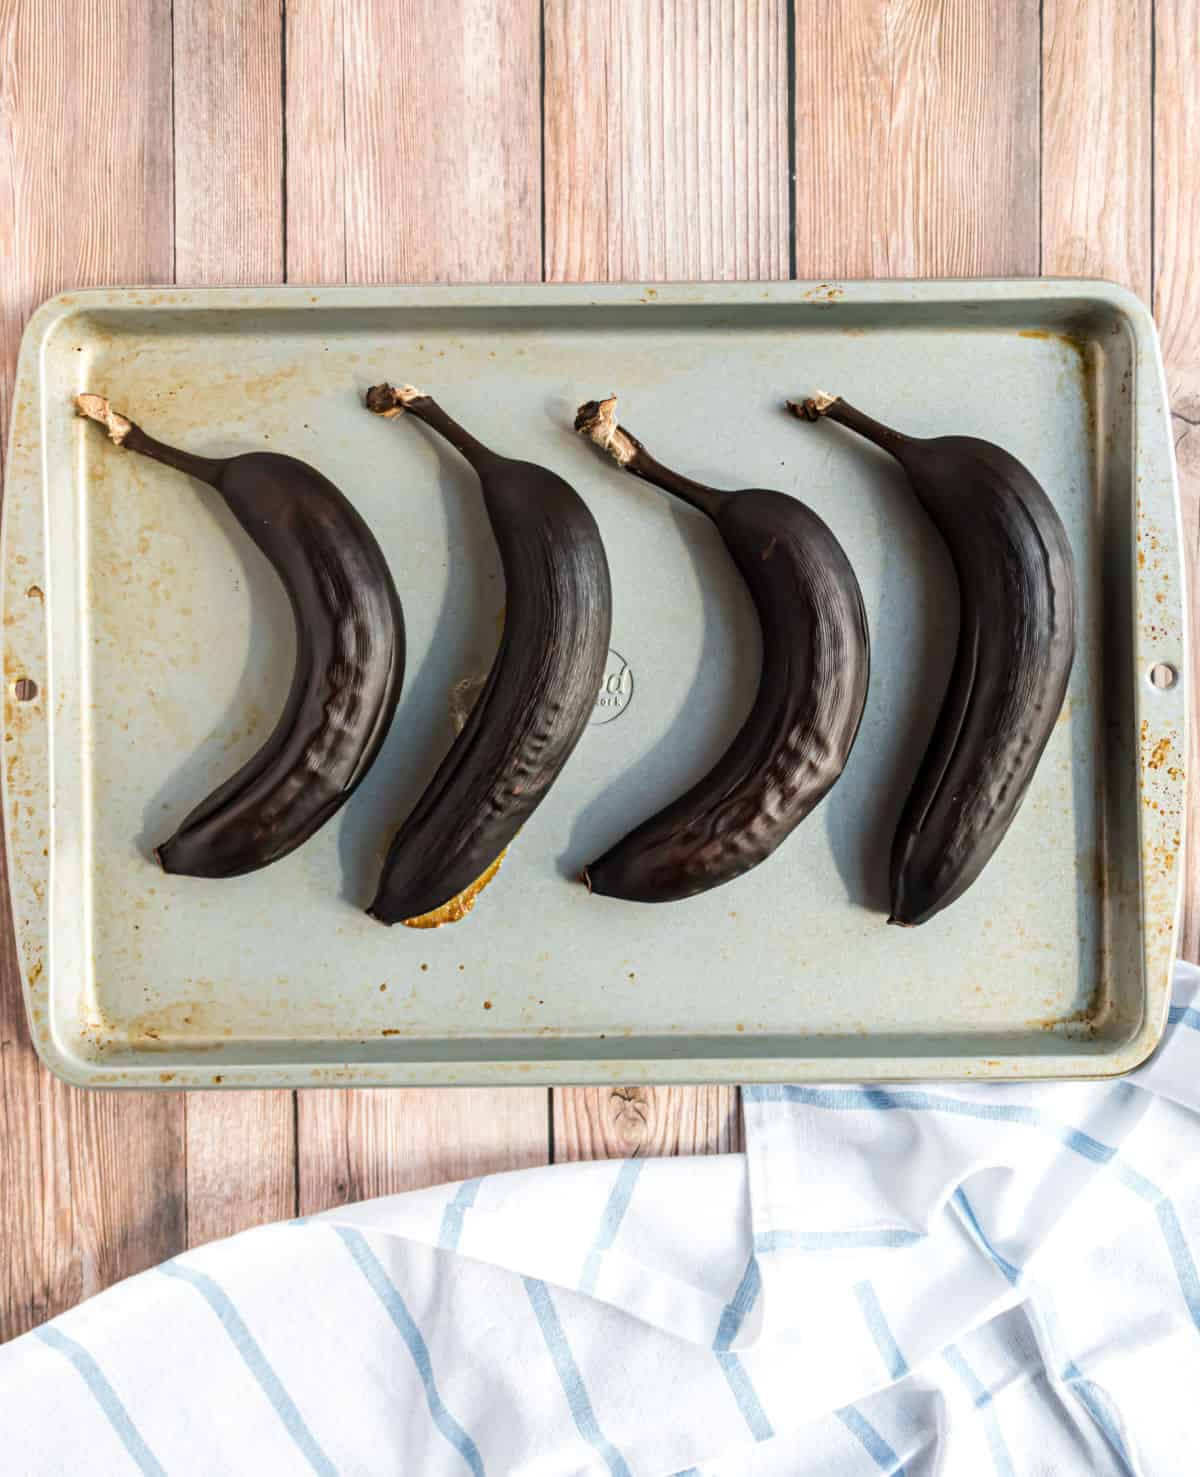 Brown ripe bananas on a baking sheet.